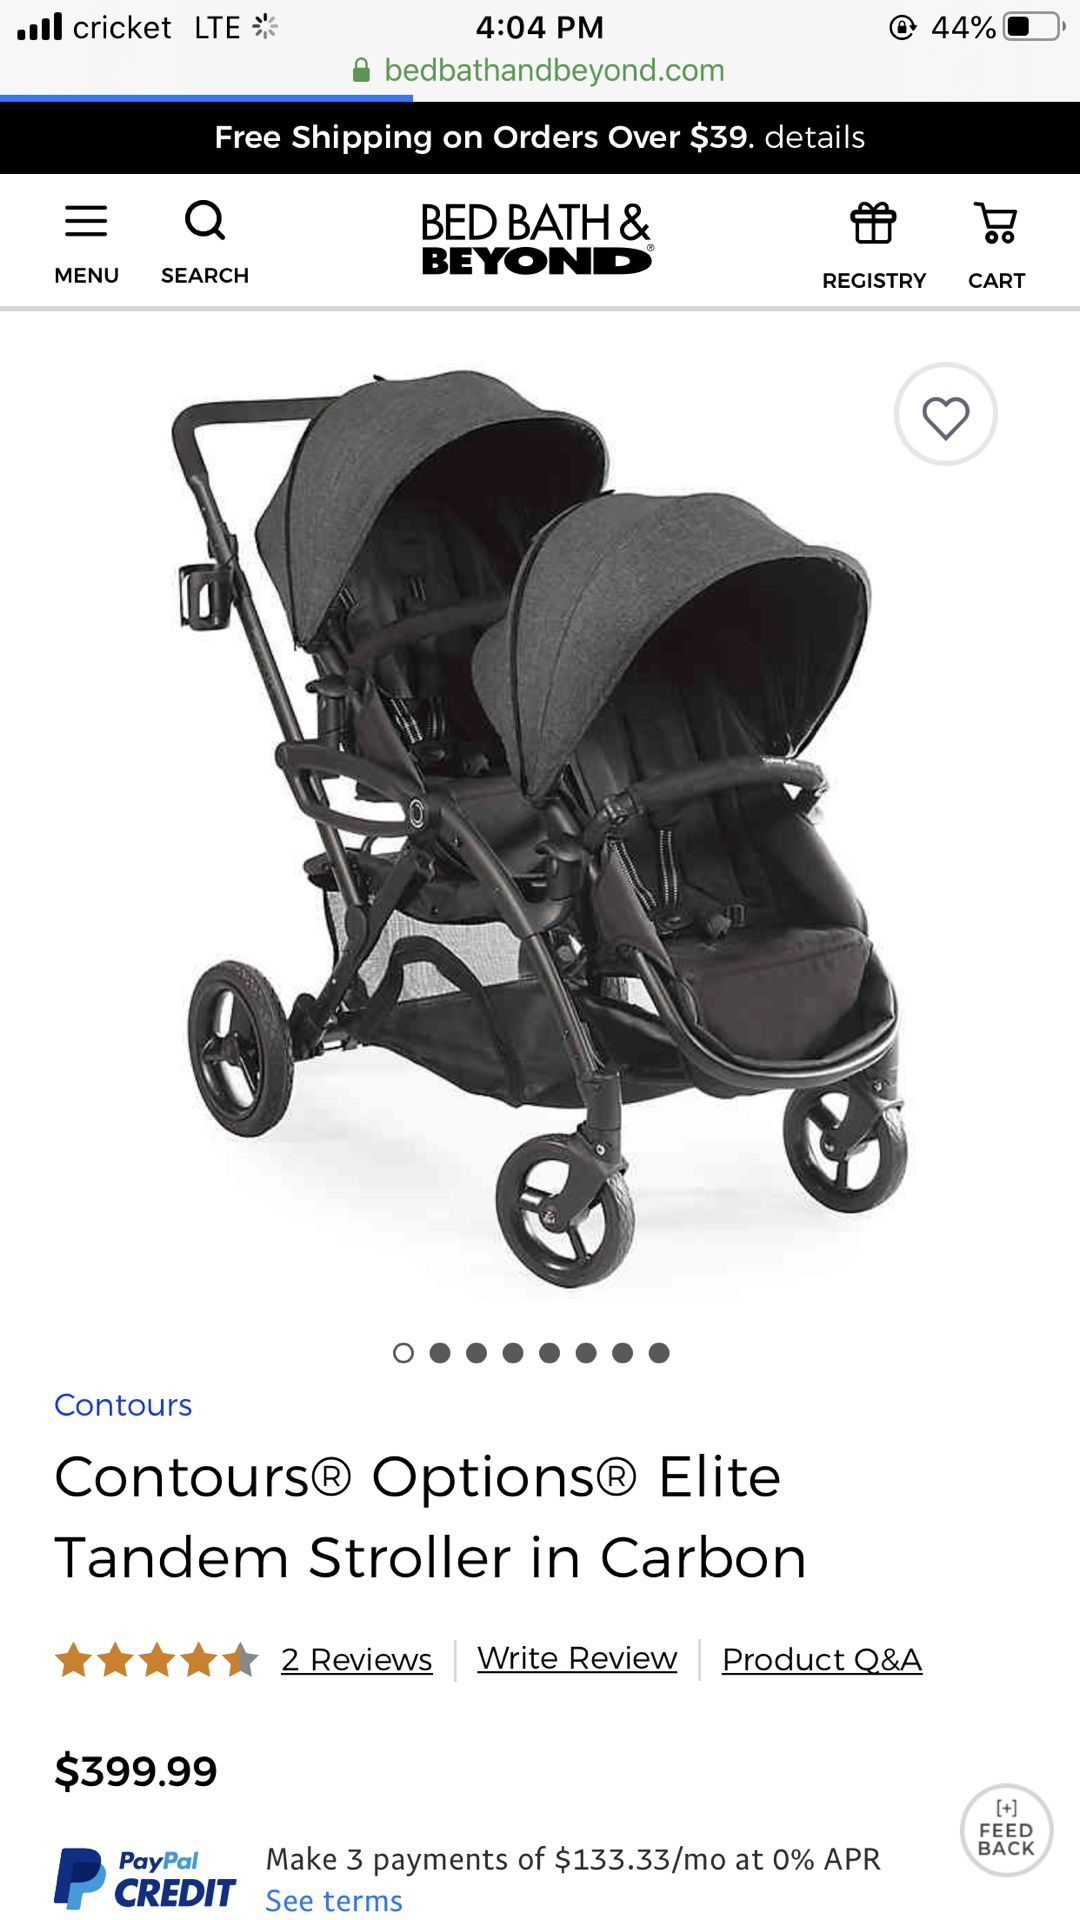 Contours Option Elite double stroller